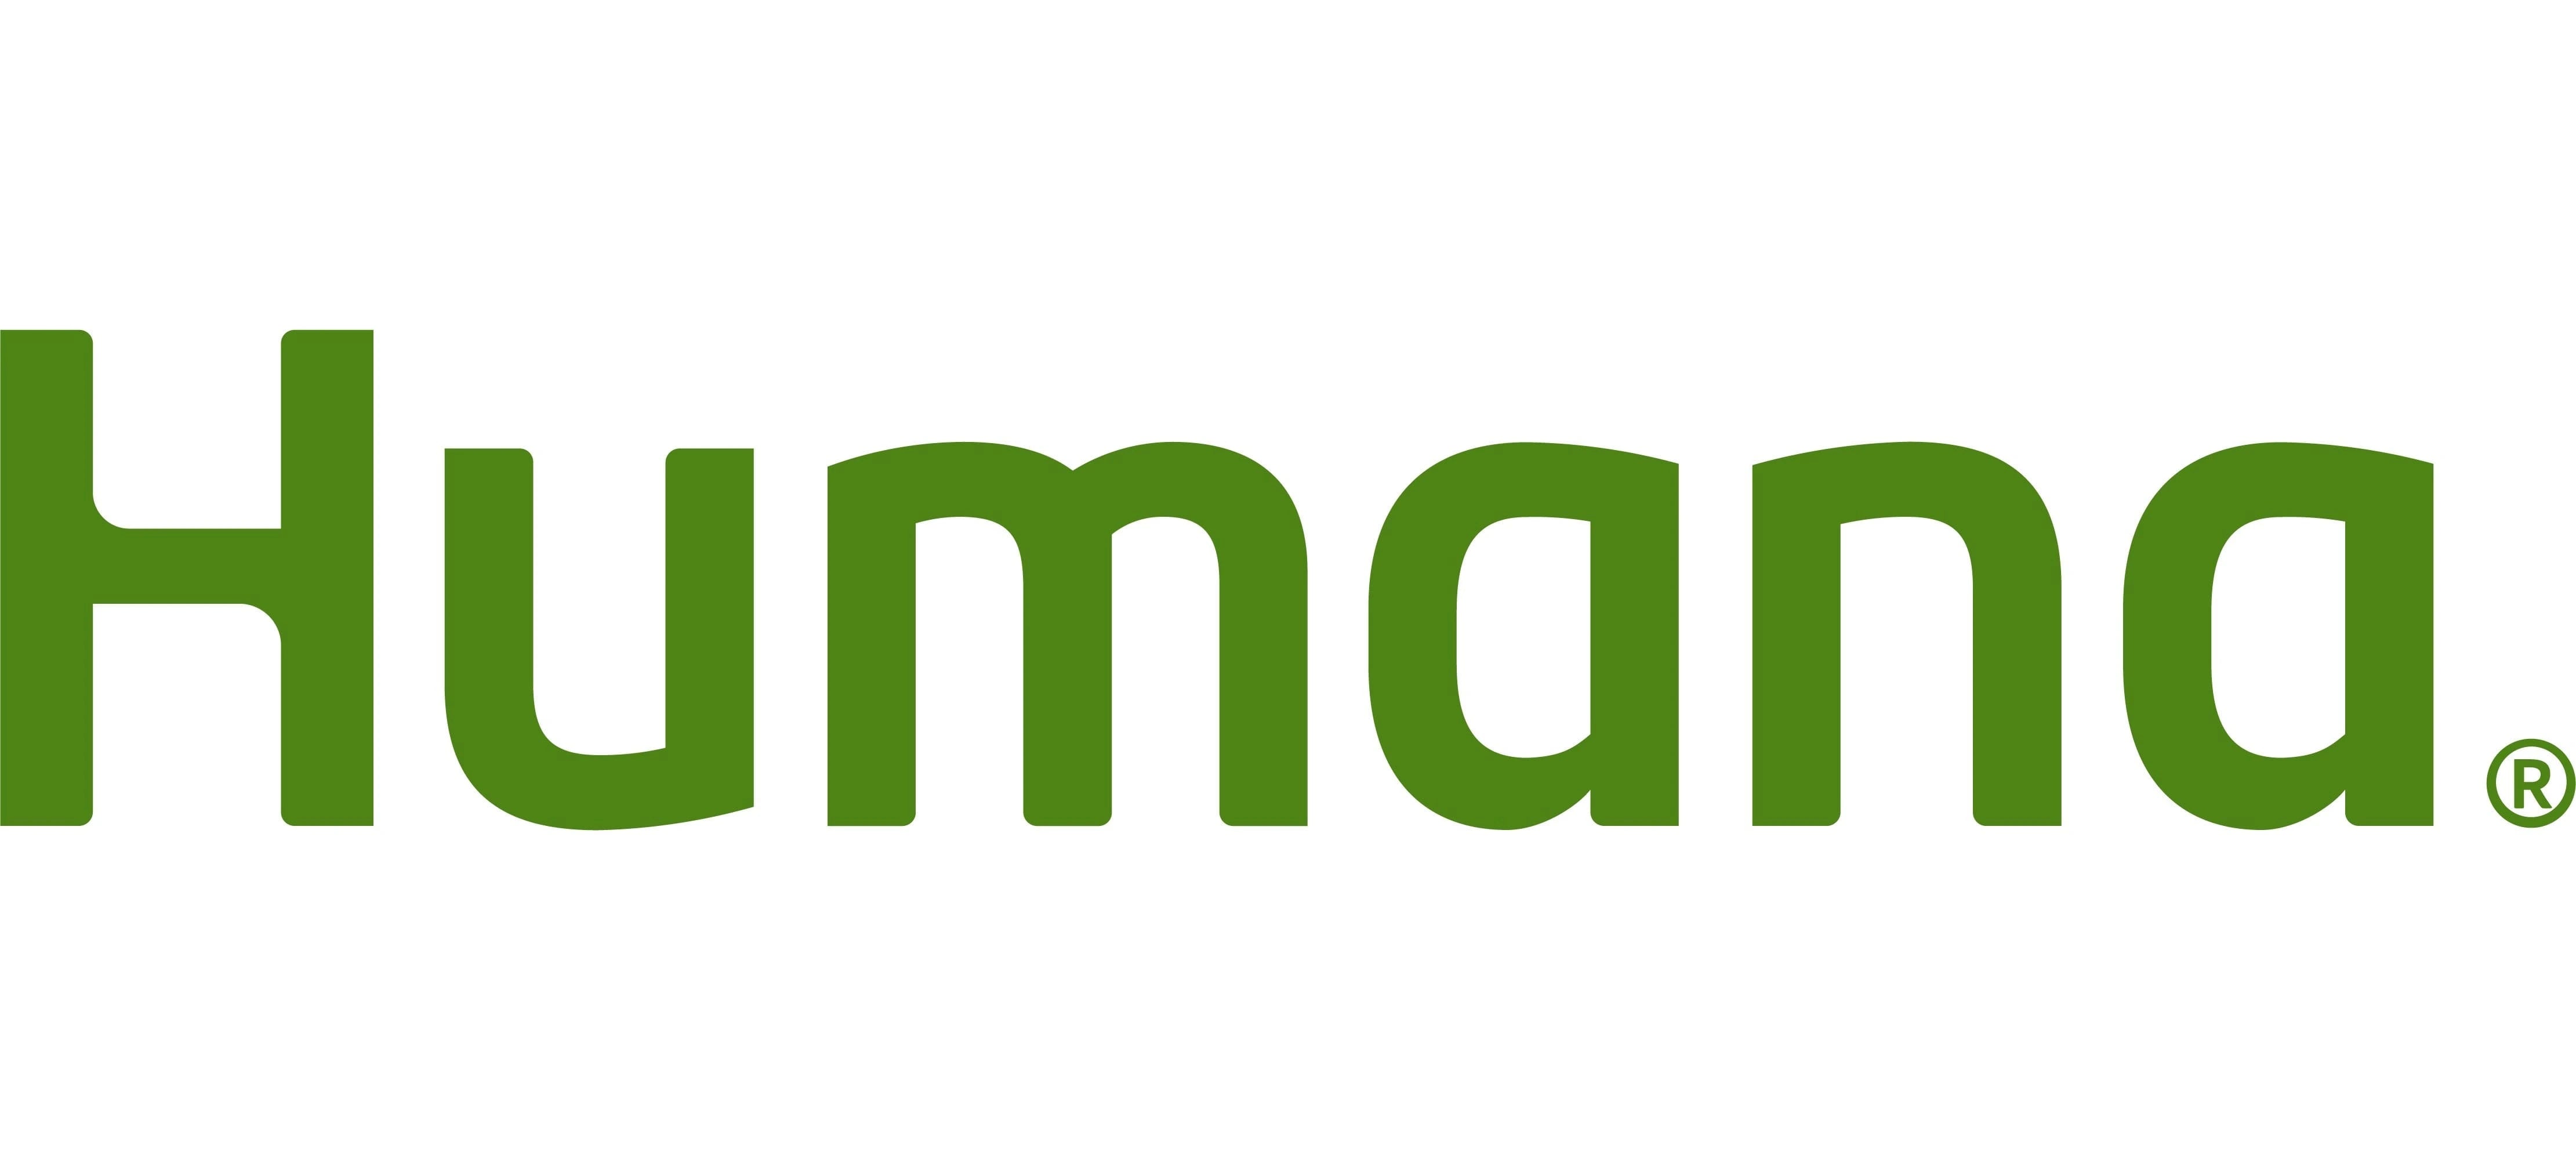 Humana-logo.webp__PID:81b9b283-b7e7-4e84-8dae-c768a6e2f8dd